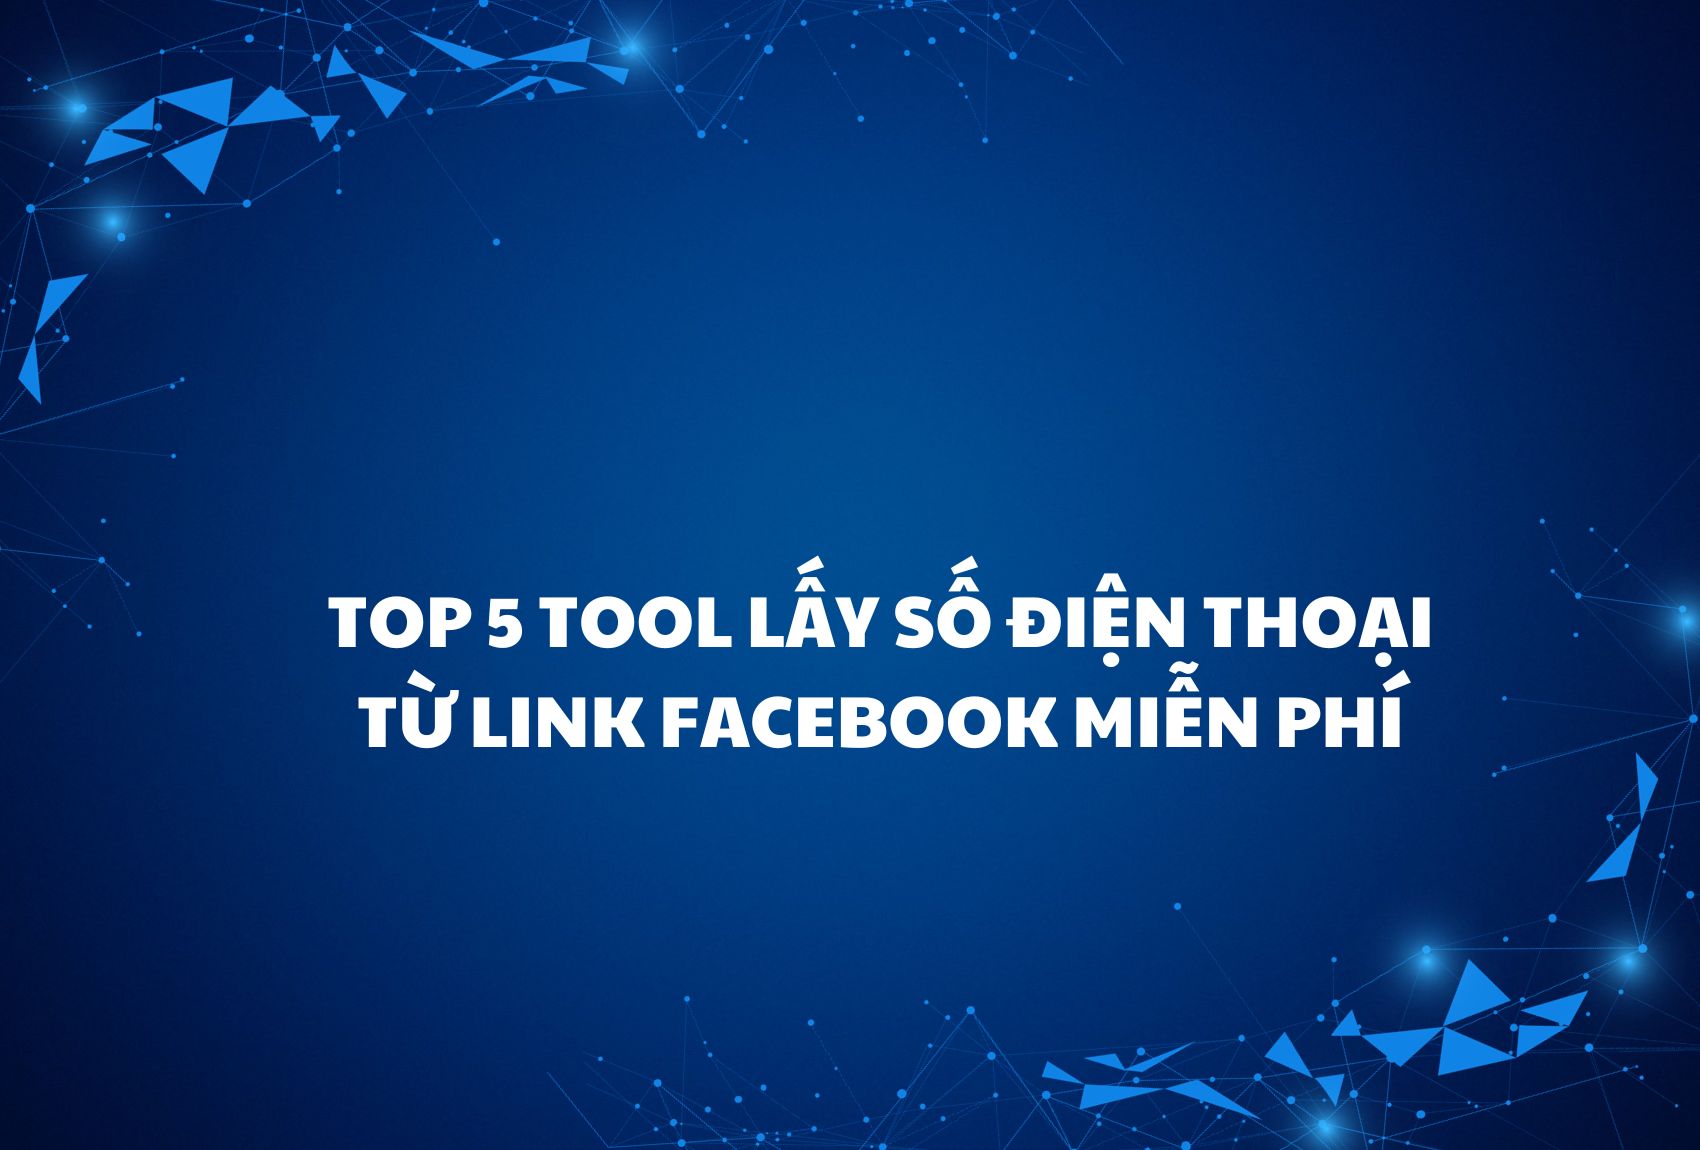 Top 5 tool lấy số điện thoại từ link FaceBook miễn phí